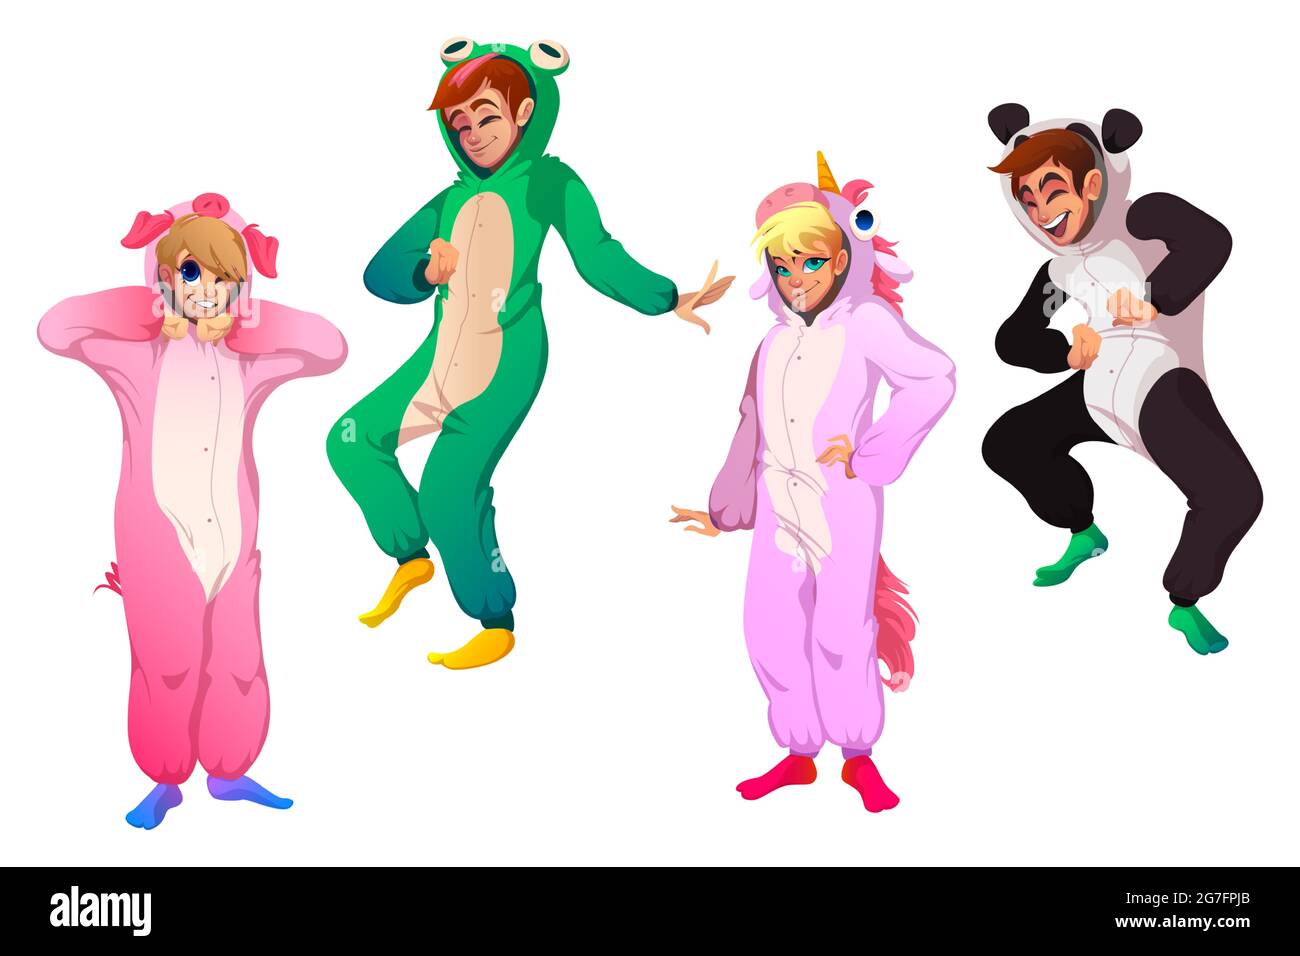 Personaggi in costumi animali, persone in kigurumi su pigiama festa.  Cartoon vettoriale di uomini e donne felici in pigiami divertenti di  maiale, unicorno, rana e panda isolato su sfondo bianco Immagine e